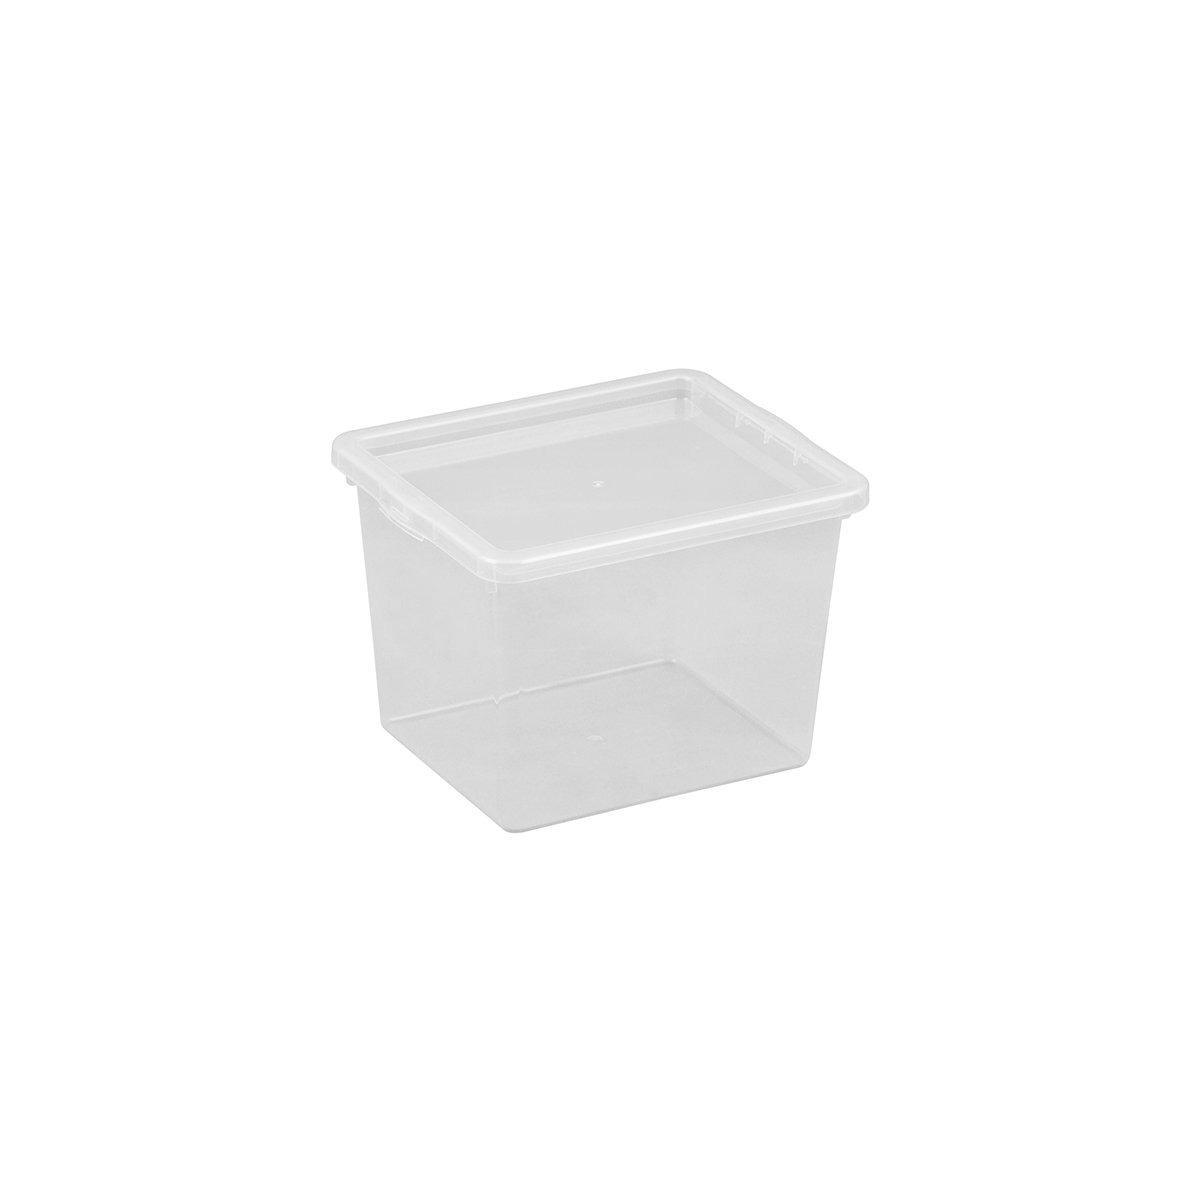 Ящик для хранения Plast Team Basic, с крышкой, 3 л (2293) - фото 1